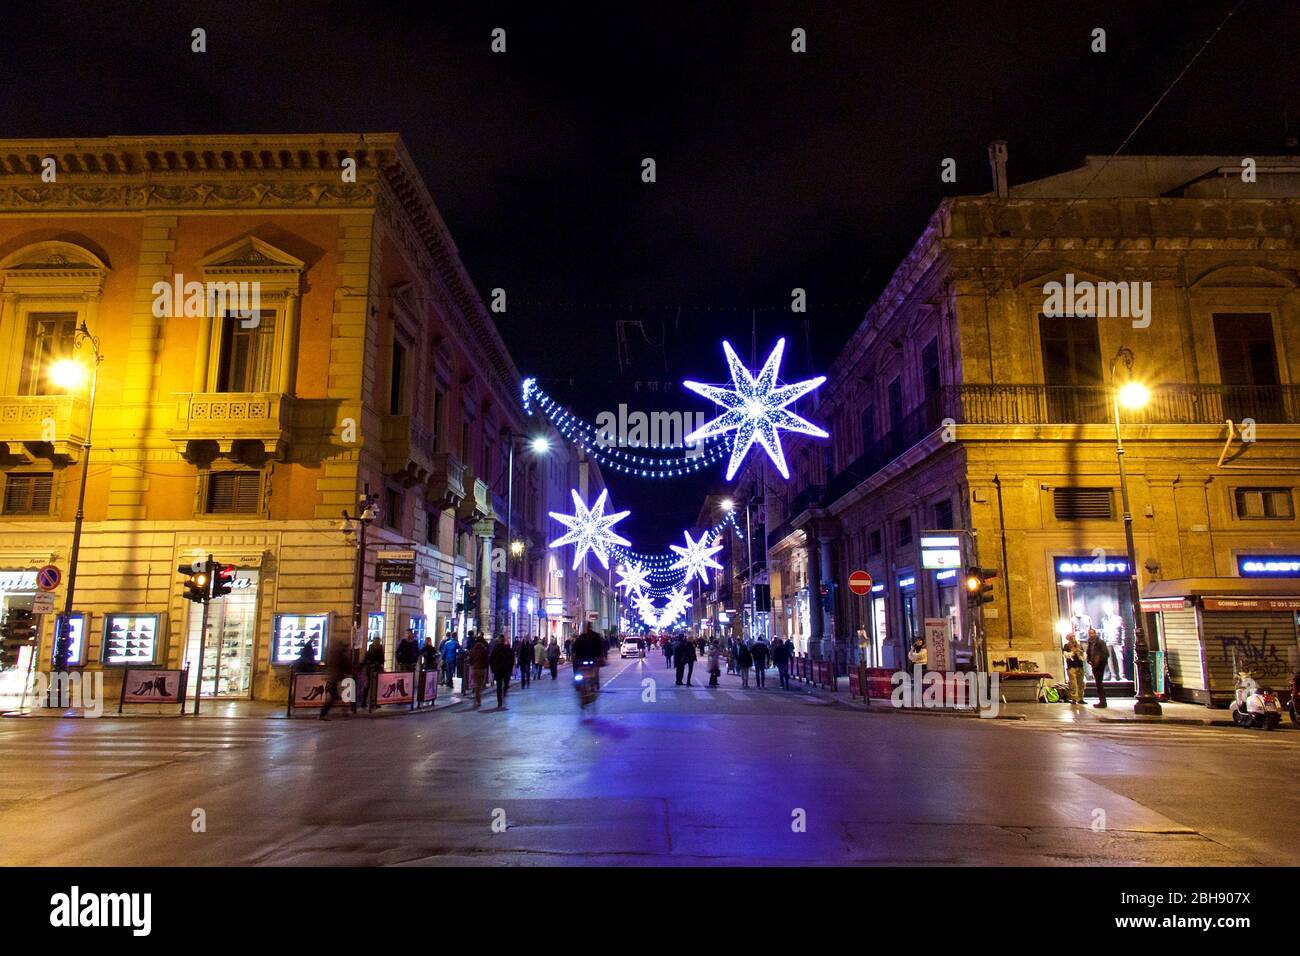 Palerme, Altstadt, Piazza Verdi beim Teatro Massimo, weihnachtlich geschmückte und beleuchtete Einkaufsstraße am Abend Banque D'Images